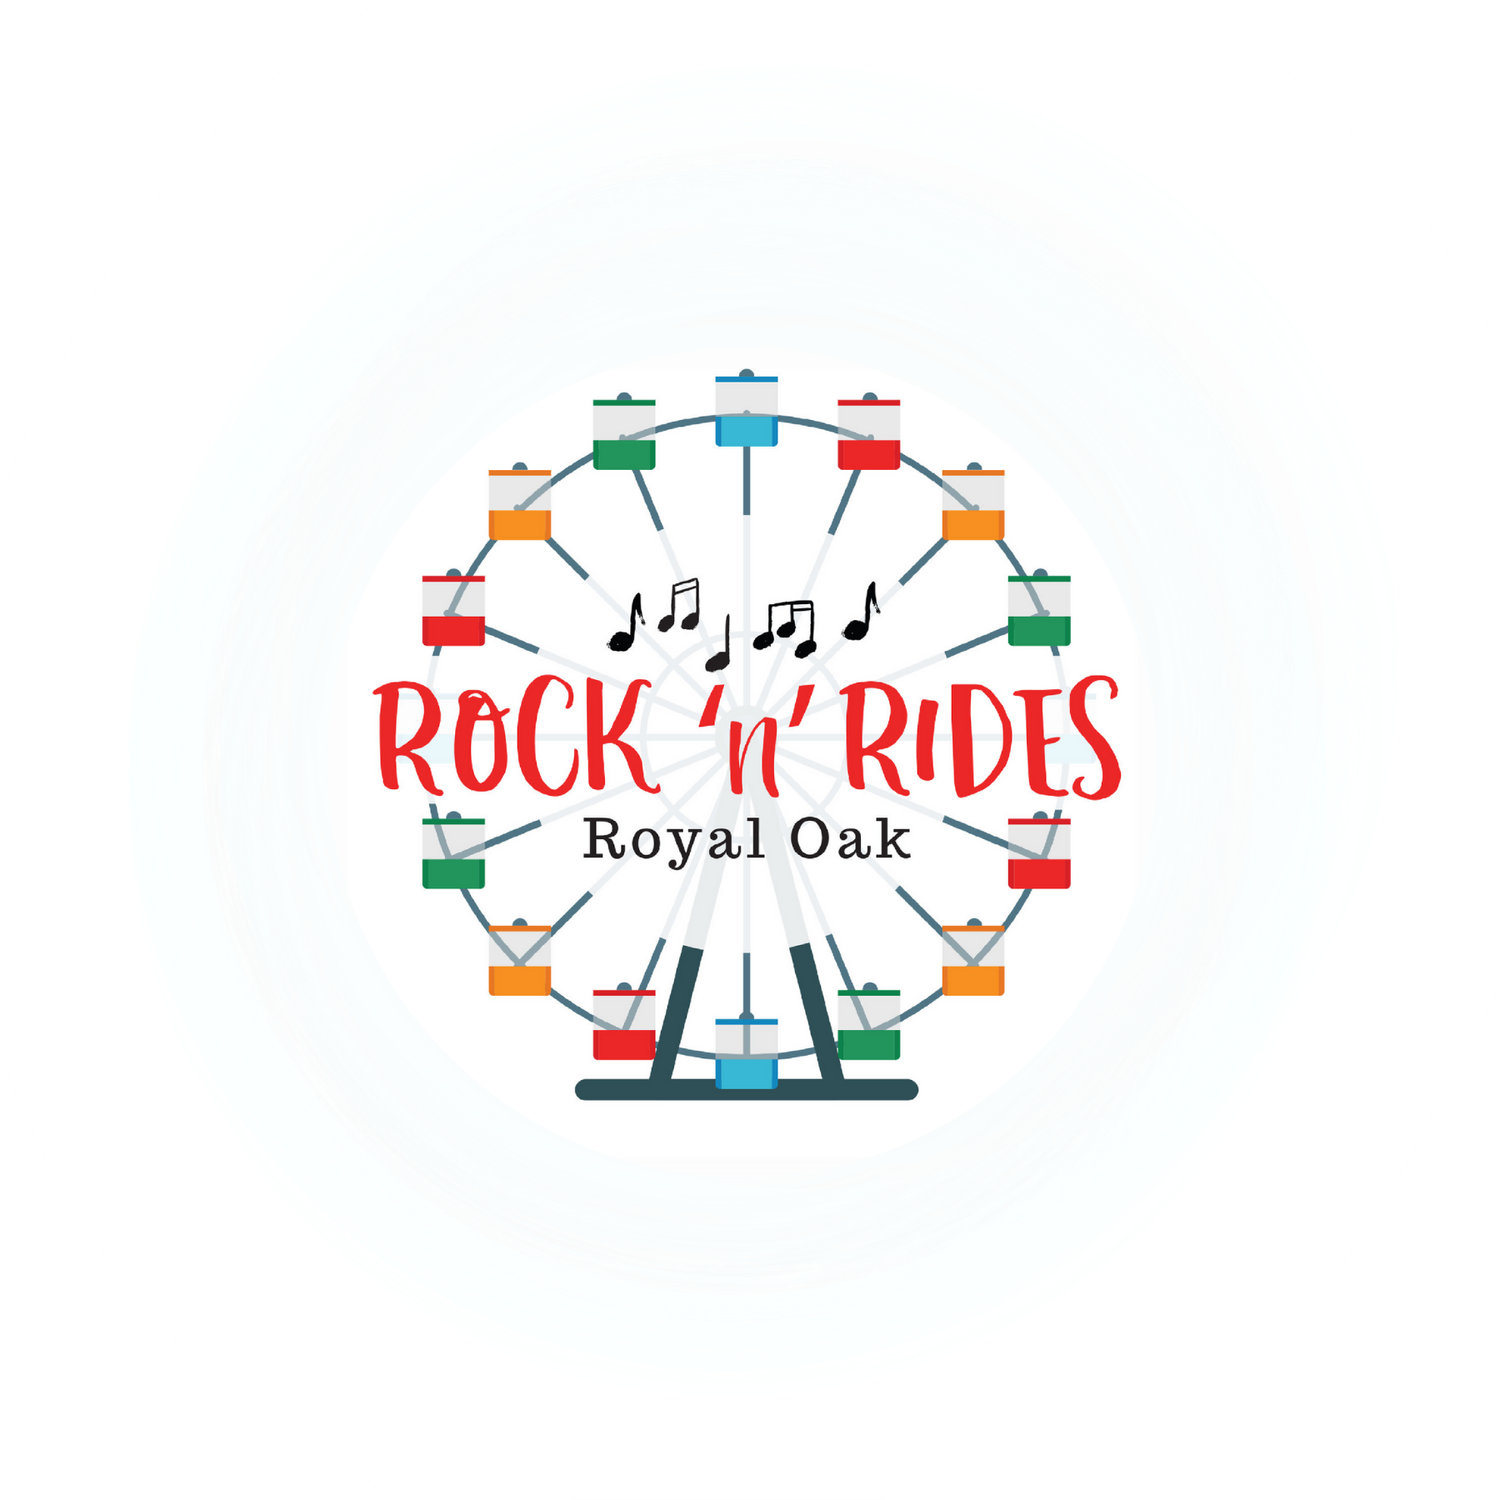 Rock 'n' Rides Royal Oak